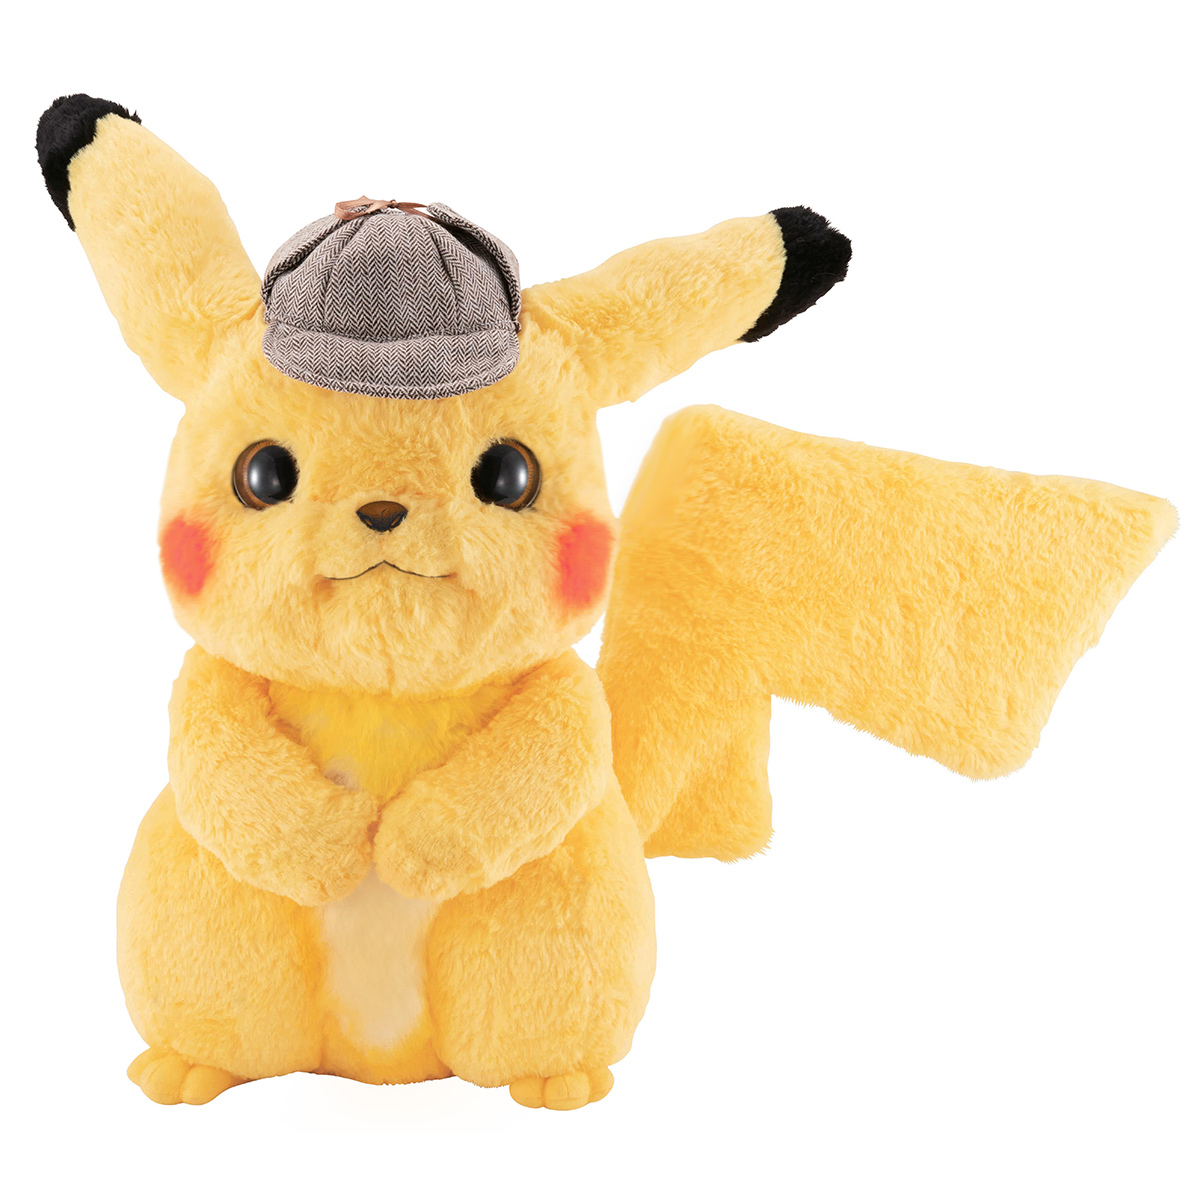 life size pikachu stuffed animal